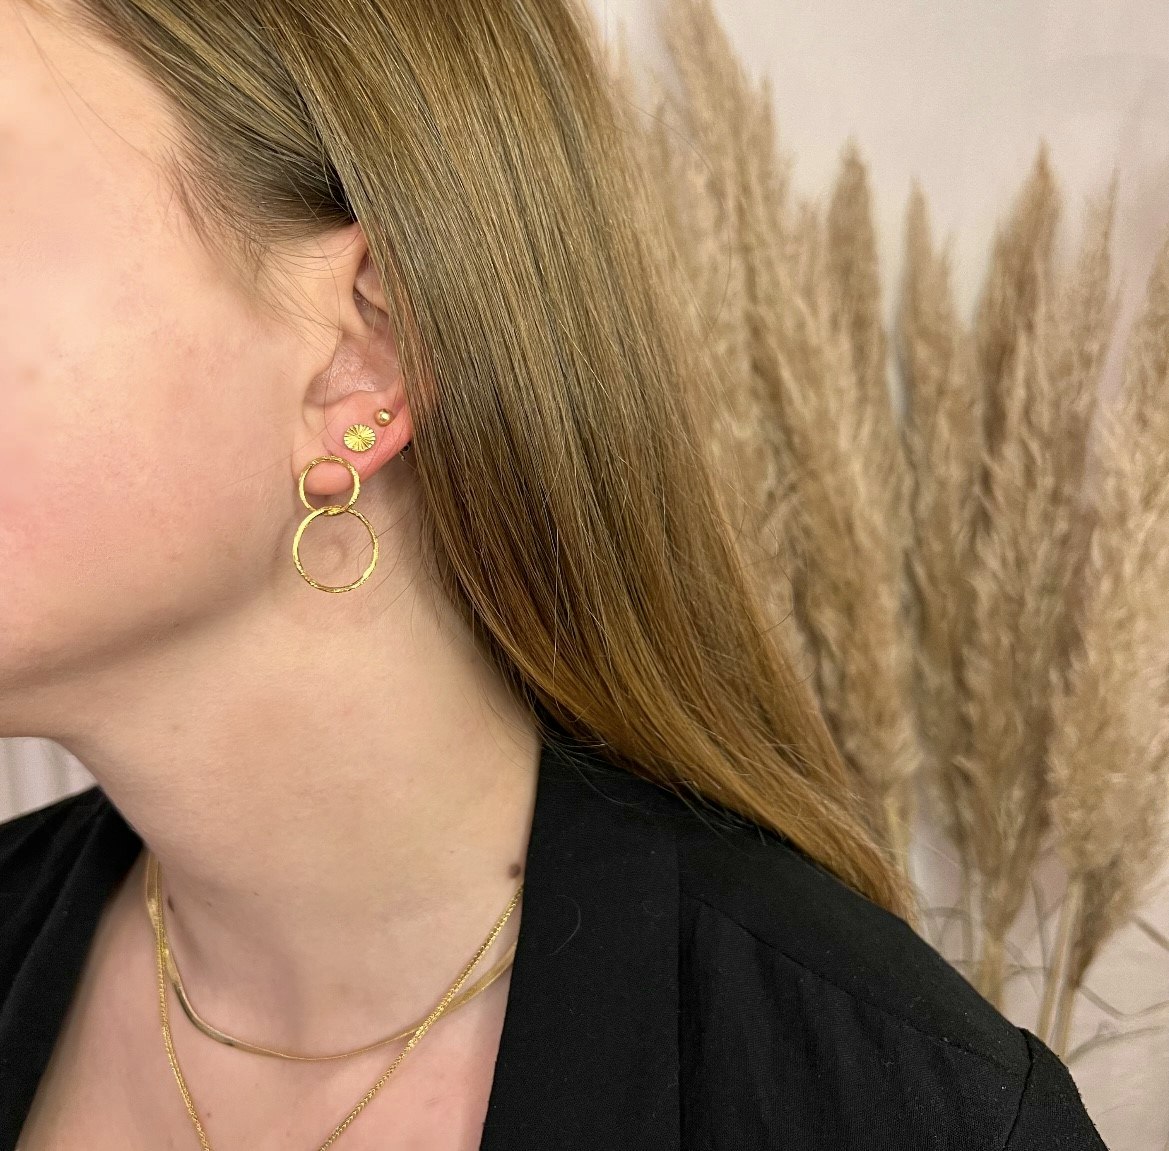 Double earrings från Pernille Corydon i Silver Sterling 925